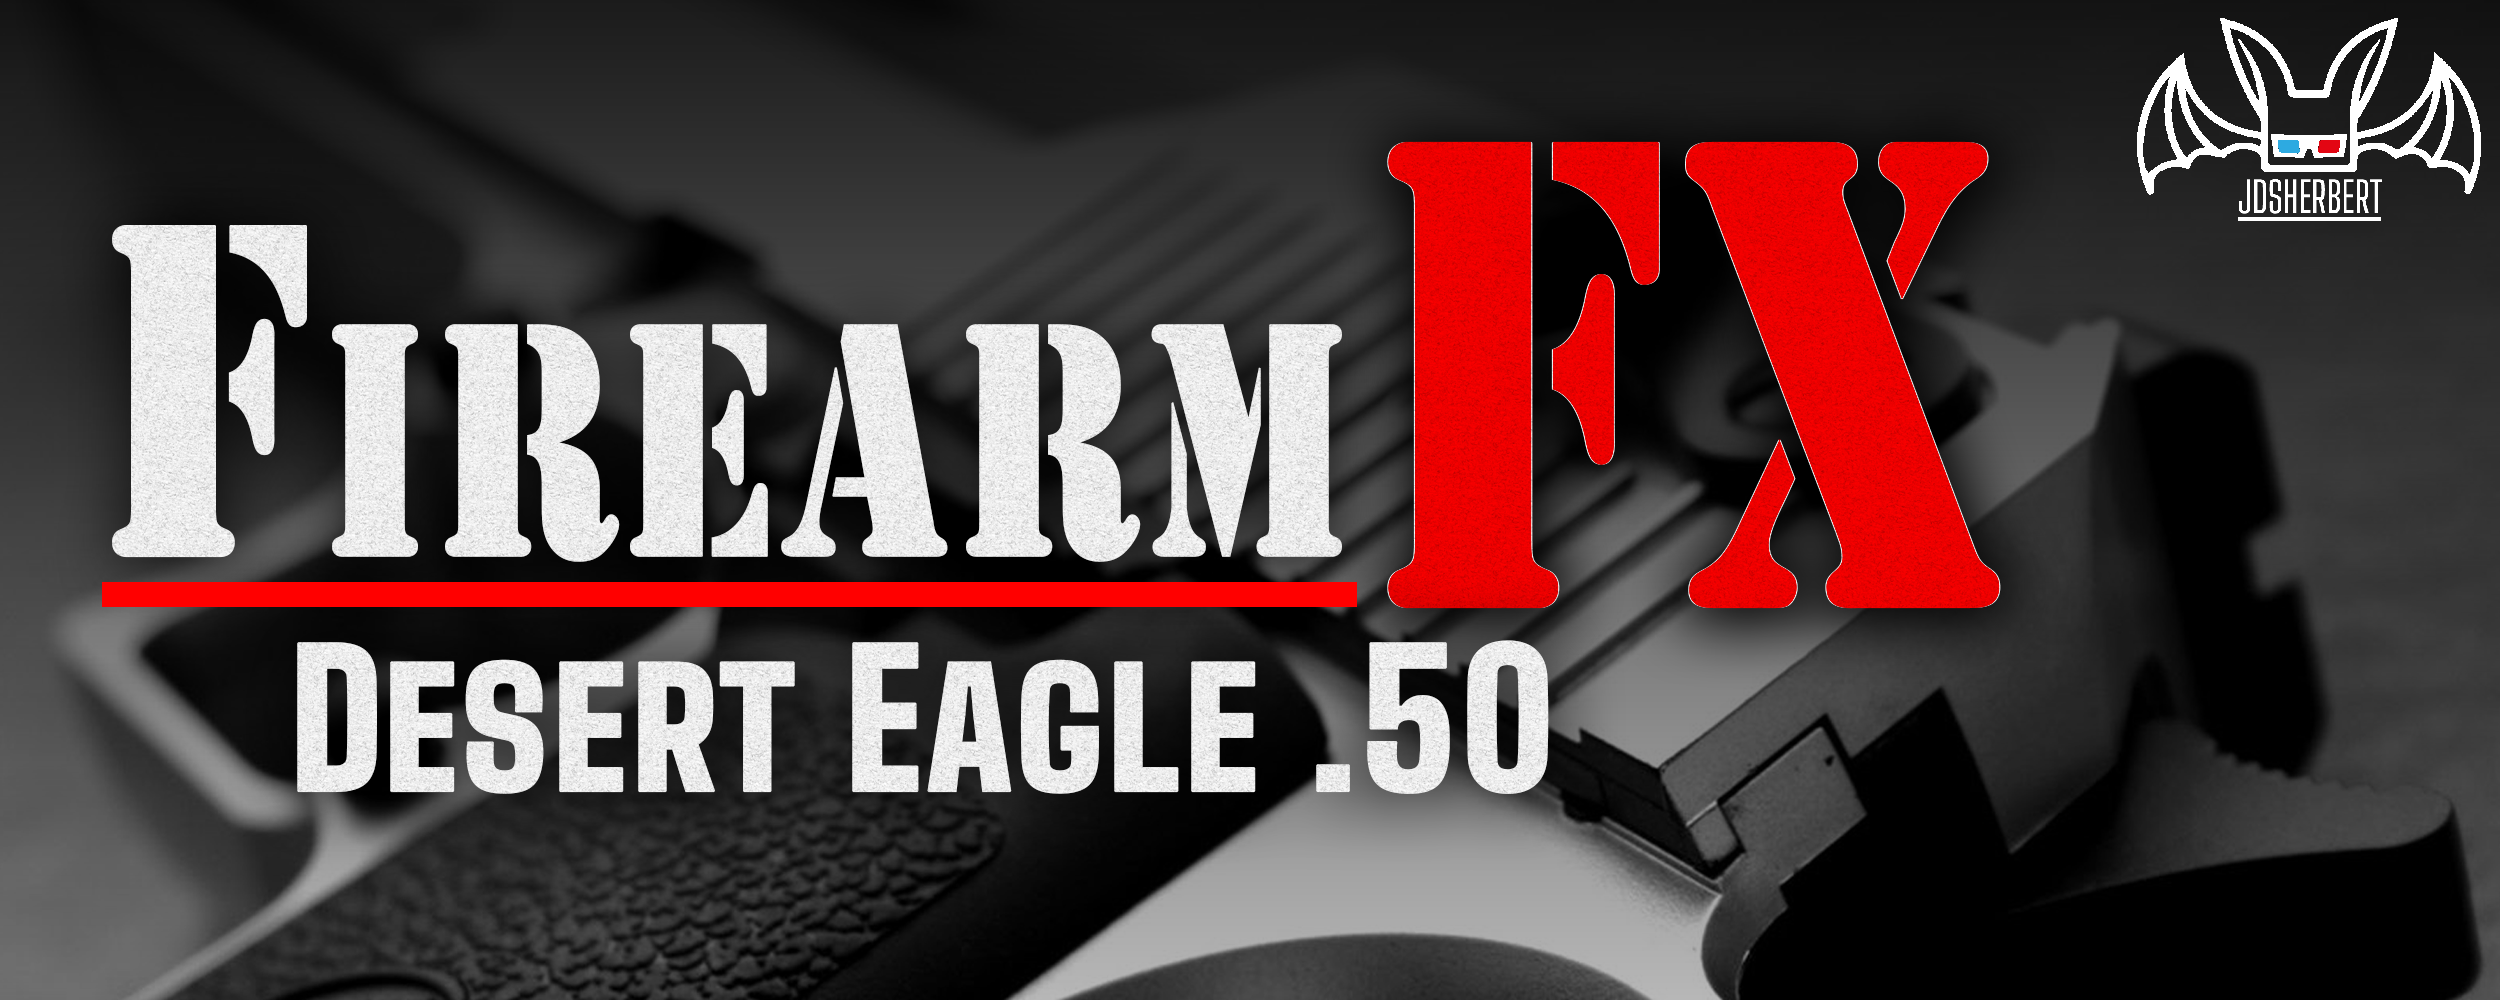 FirearmFX : Desert Eagle .50 Sound Effect Pack [SFX]